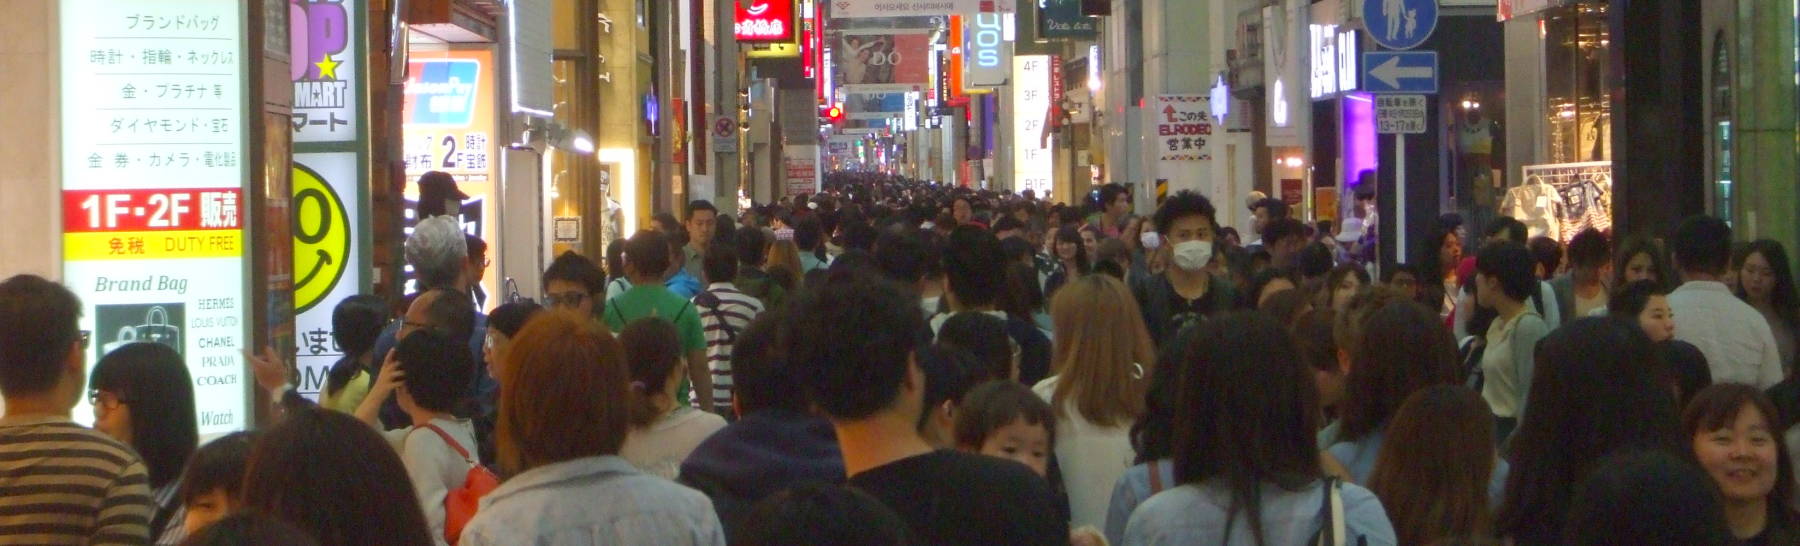 Crowd in Shinsaibashi shopping district in Osaka.